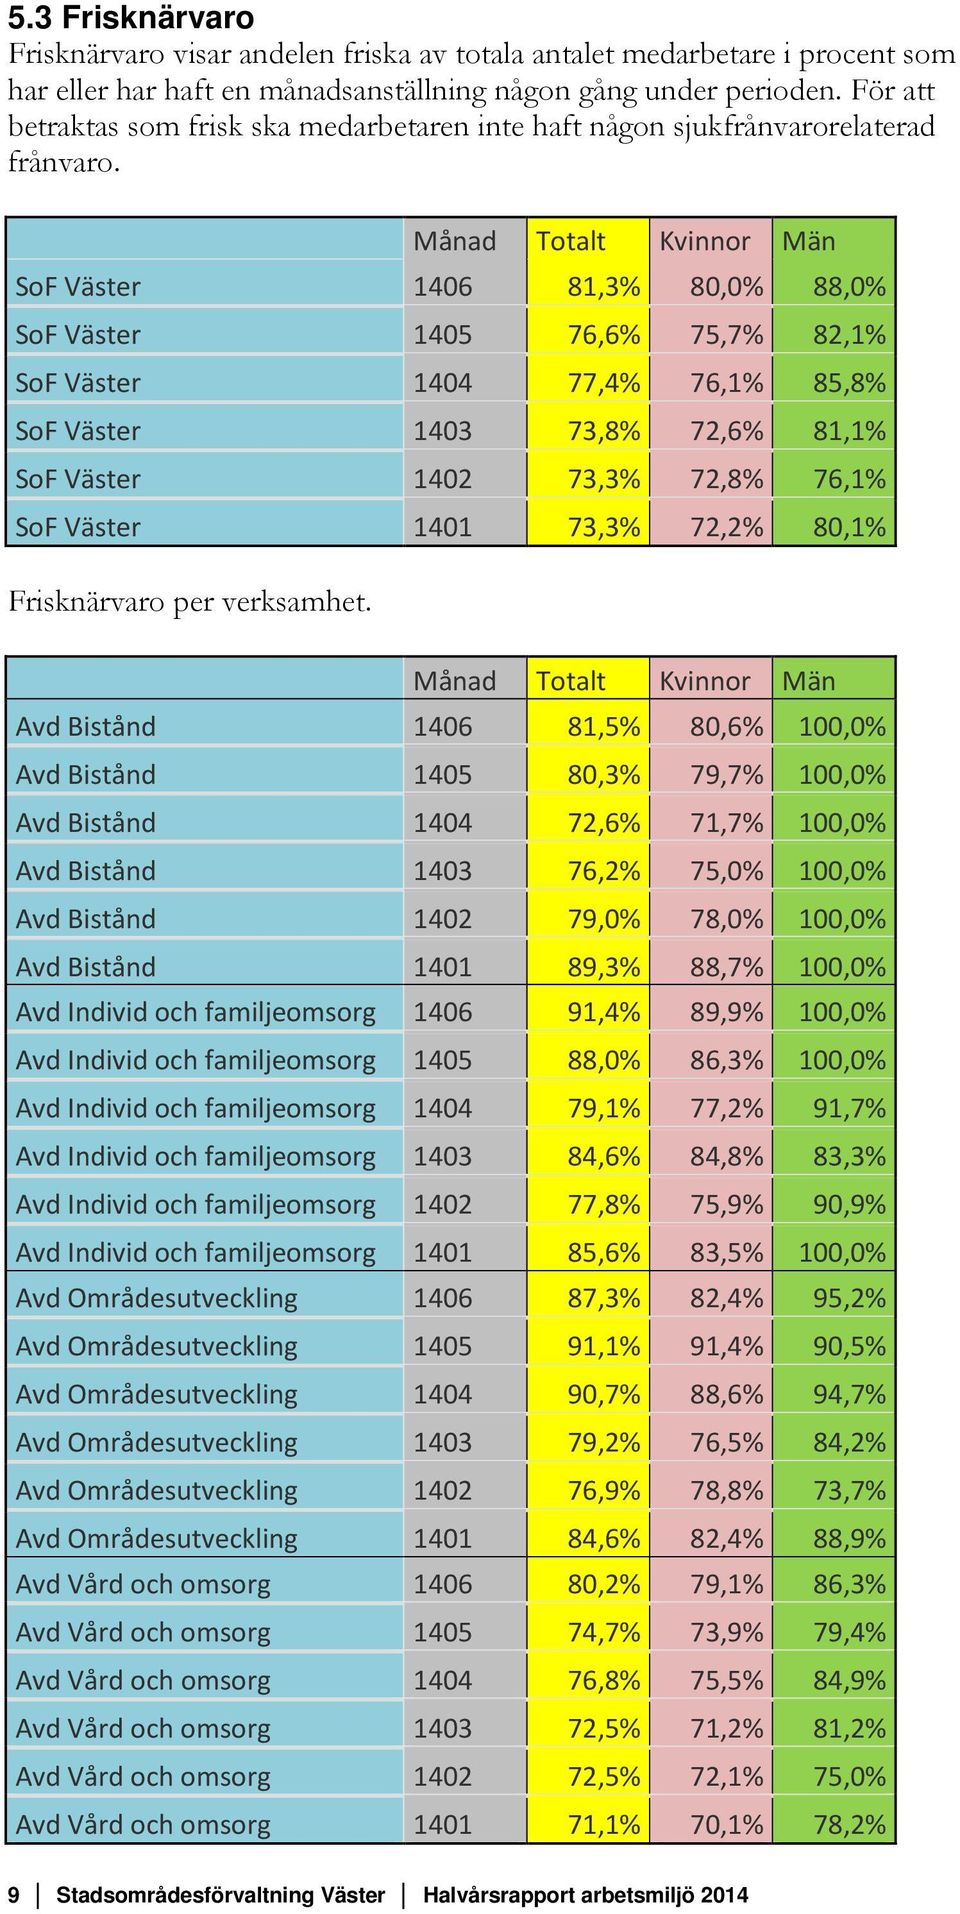 Månad Totalt Kvinnor Män SoF Väster 1406 81,3% 80,0% 88,0% SoF Väster 1405 76,6% 75,7% 82,1% SoF Väster 1404 77,4% 76,1% 85,8% SoF Väster 1403 73,8% 72,6% 81,1% SoF Väster 1402 73,3% 72,8% 76,1% SoF